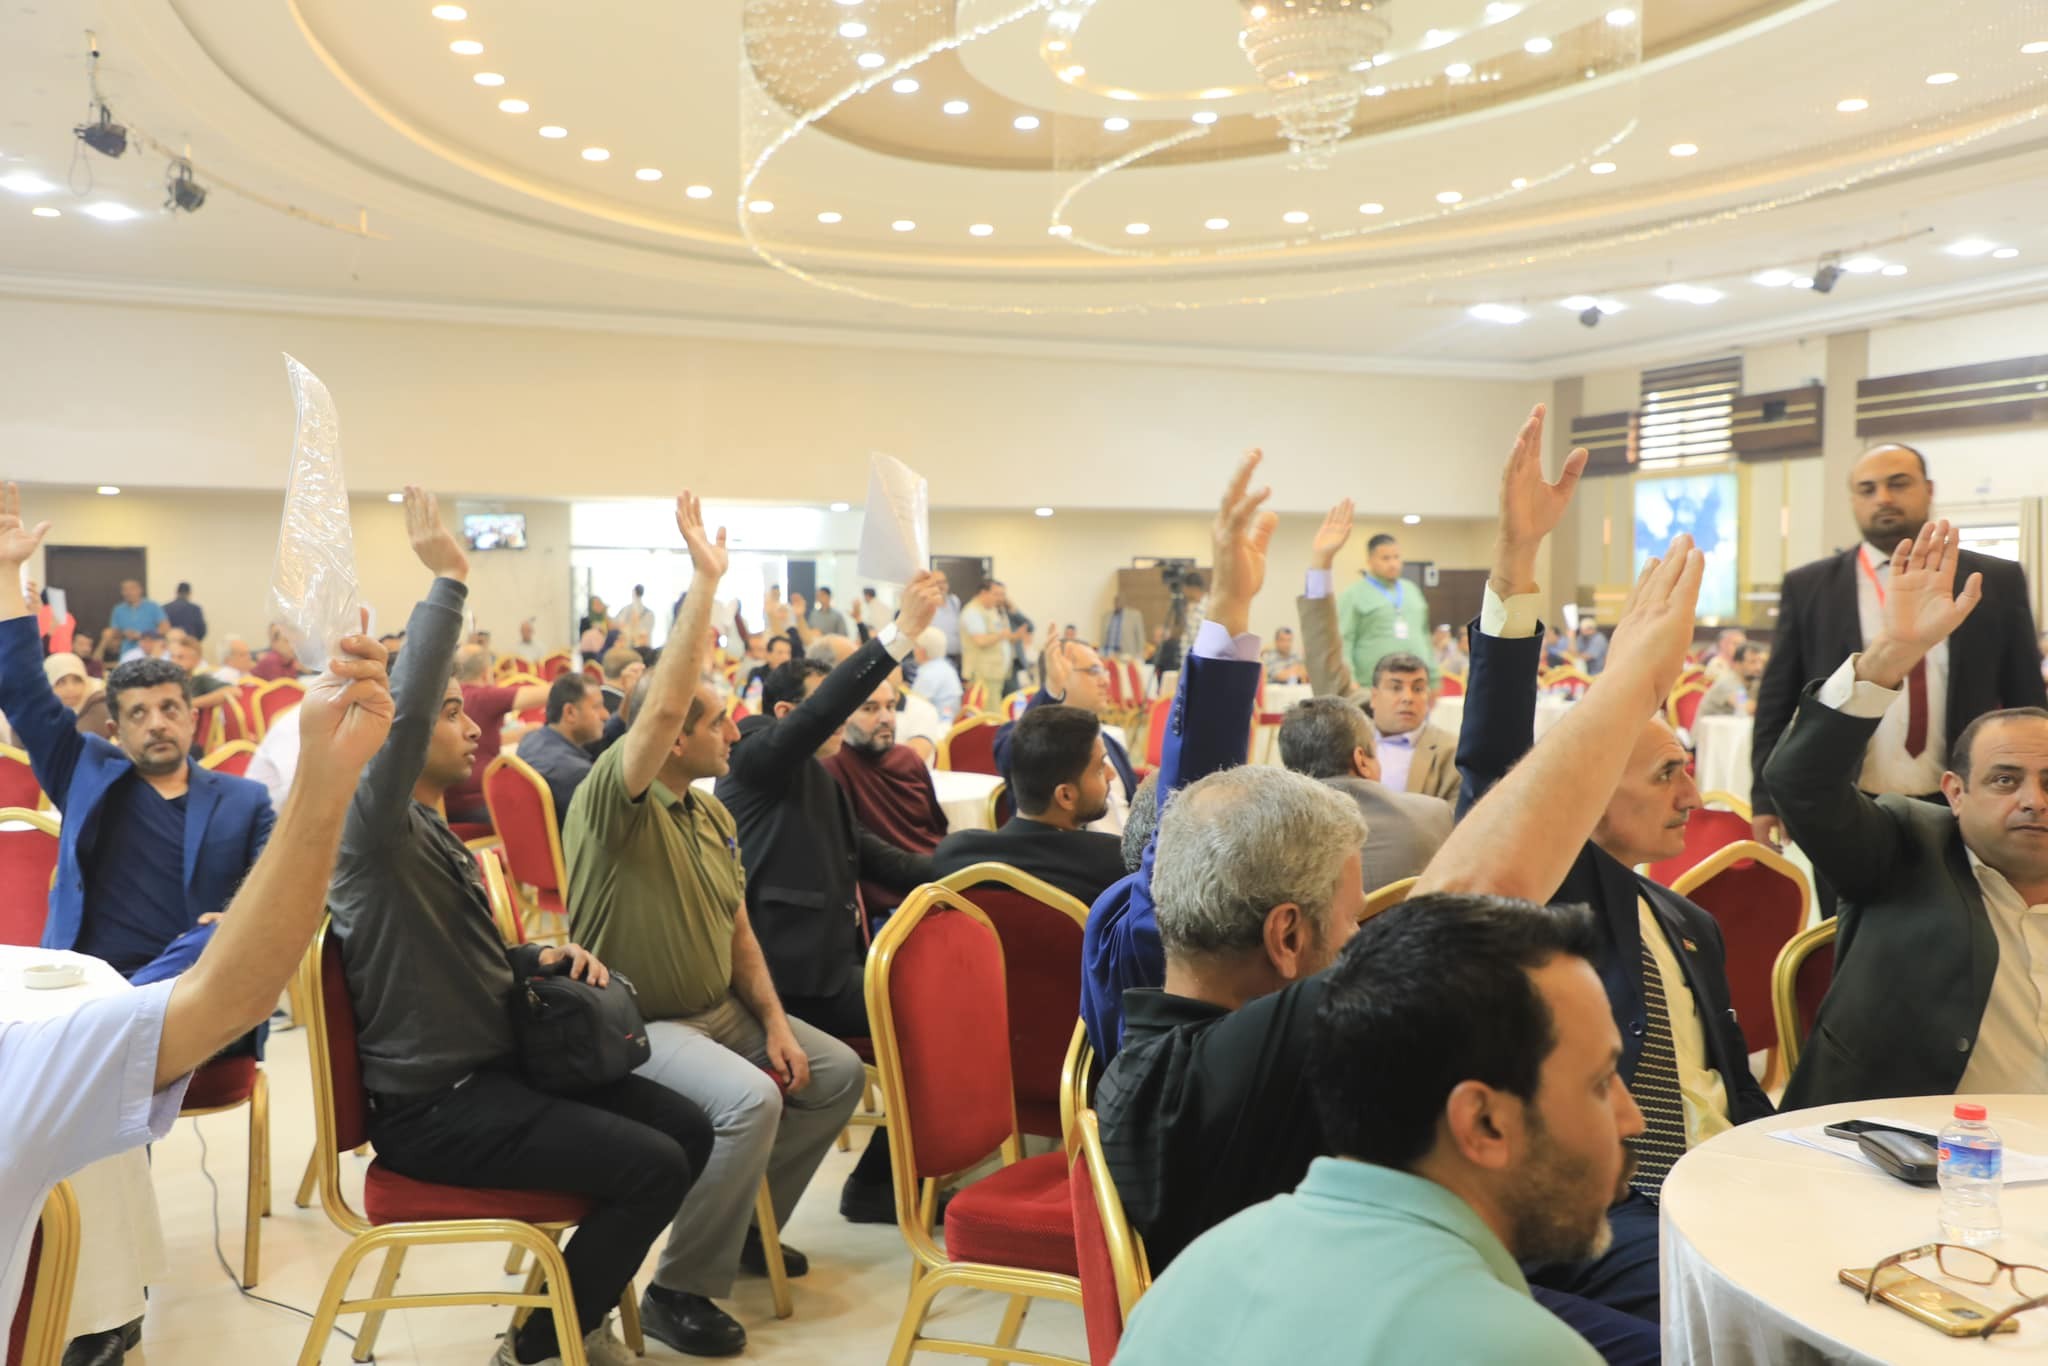 نقابة الصحفيين الفلسطينيين تختتم بنجاح مؤتمرها العام وتعتمد قرارات مهمة 1.jpg